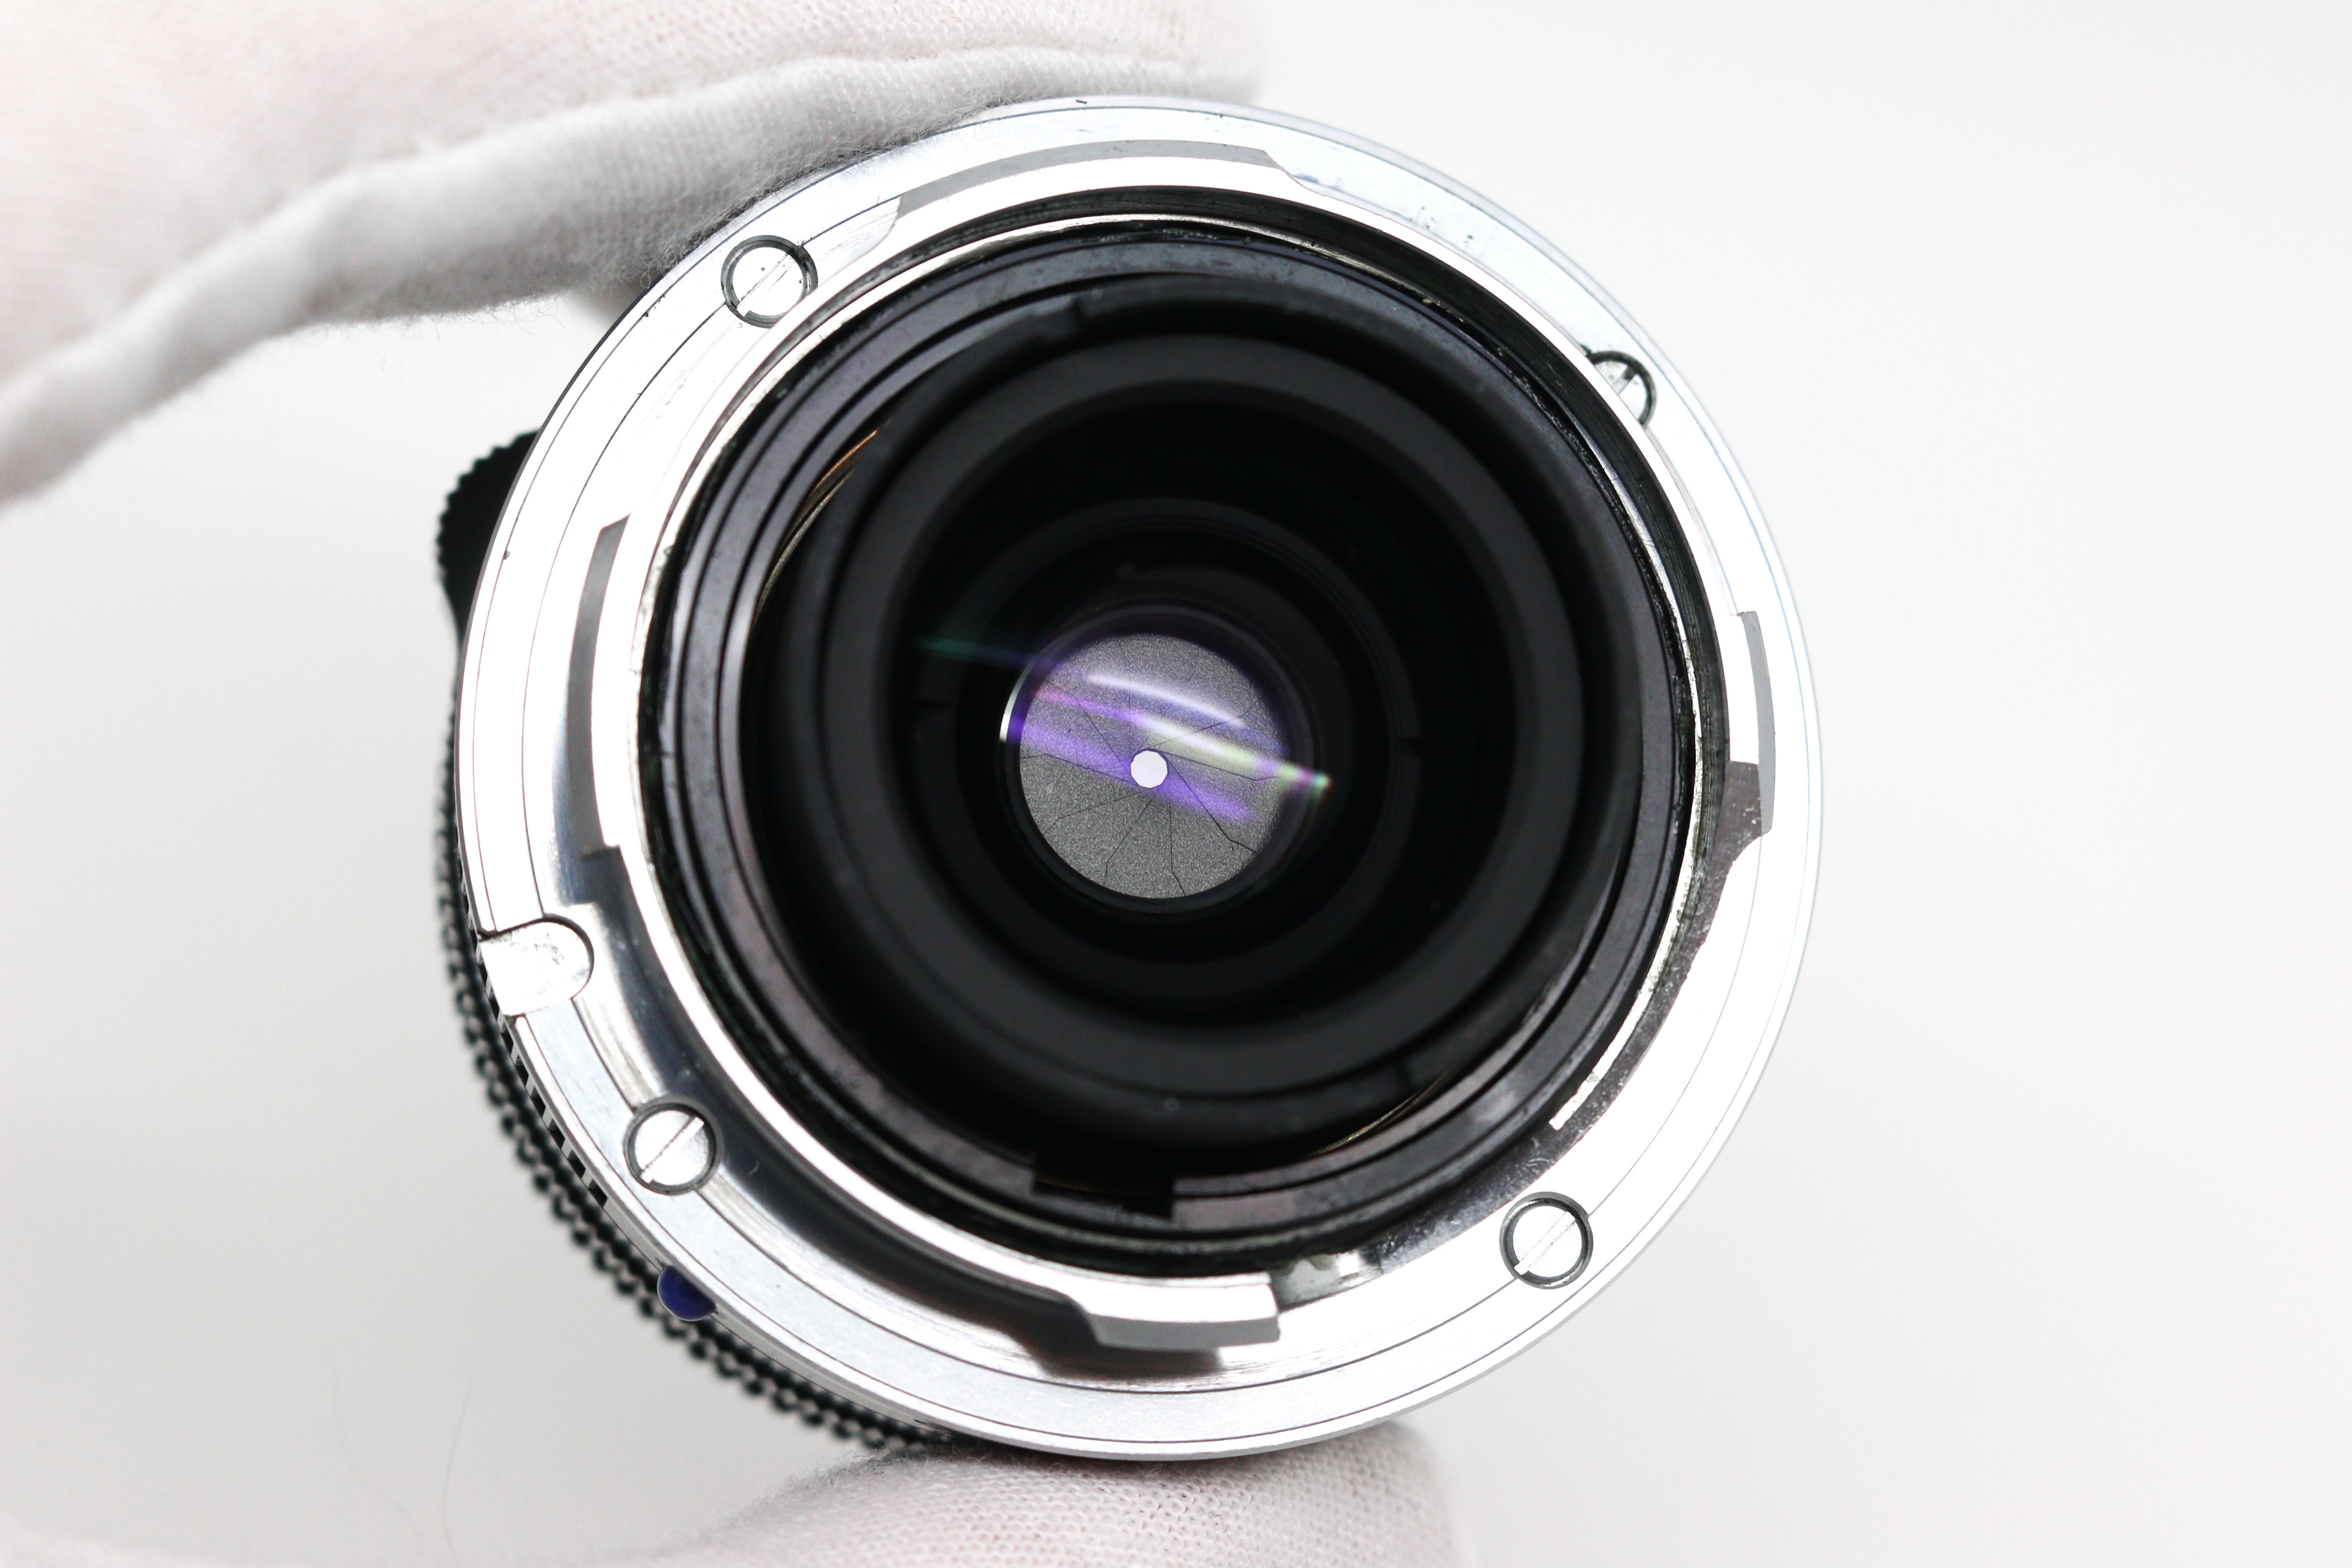 Carl Zeiss Biogon T 35mm F/2.8 ZM Lens for Leica M